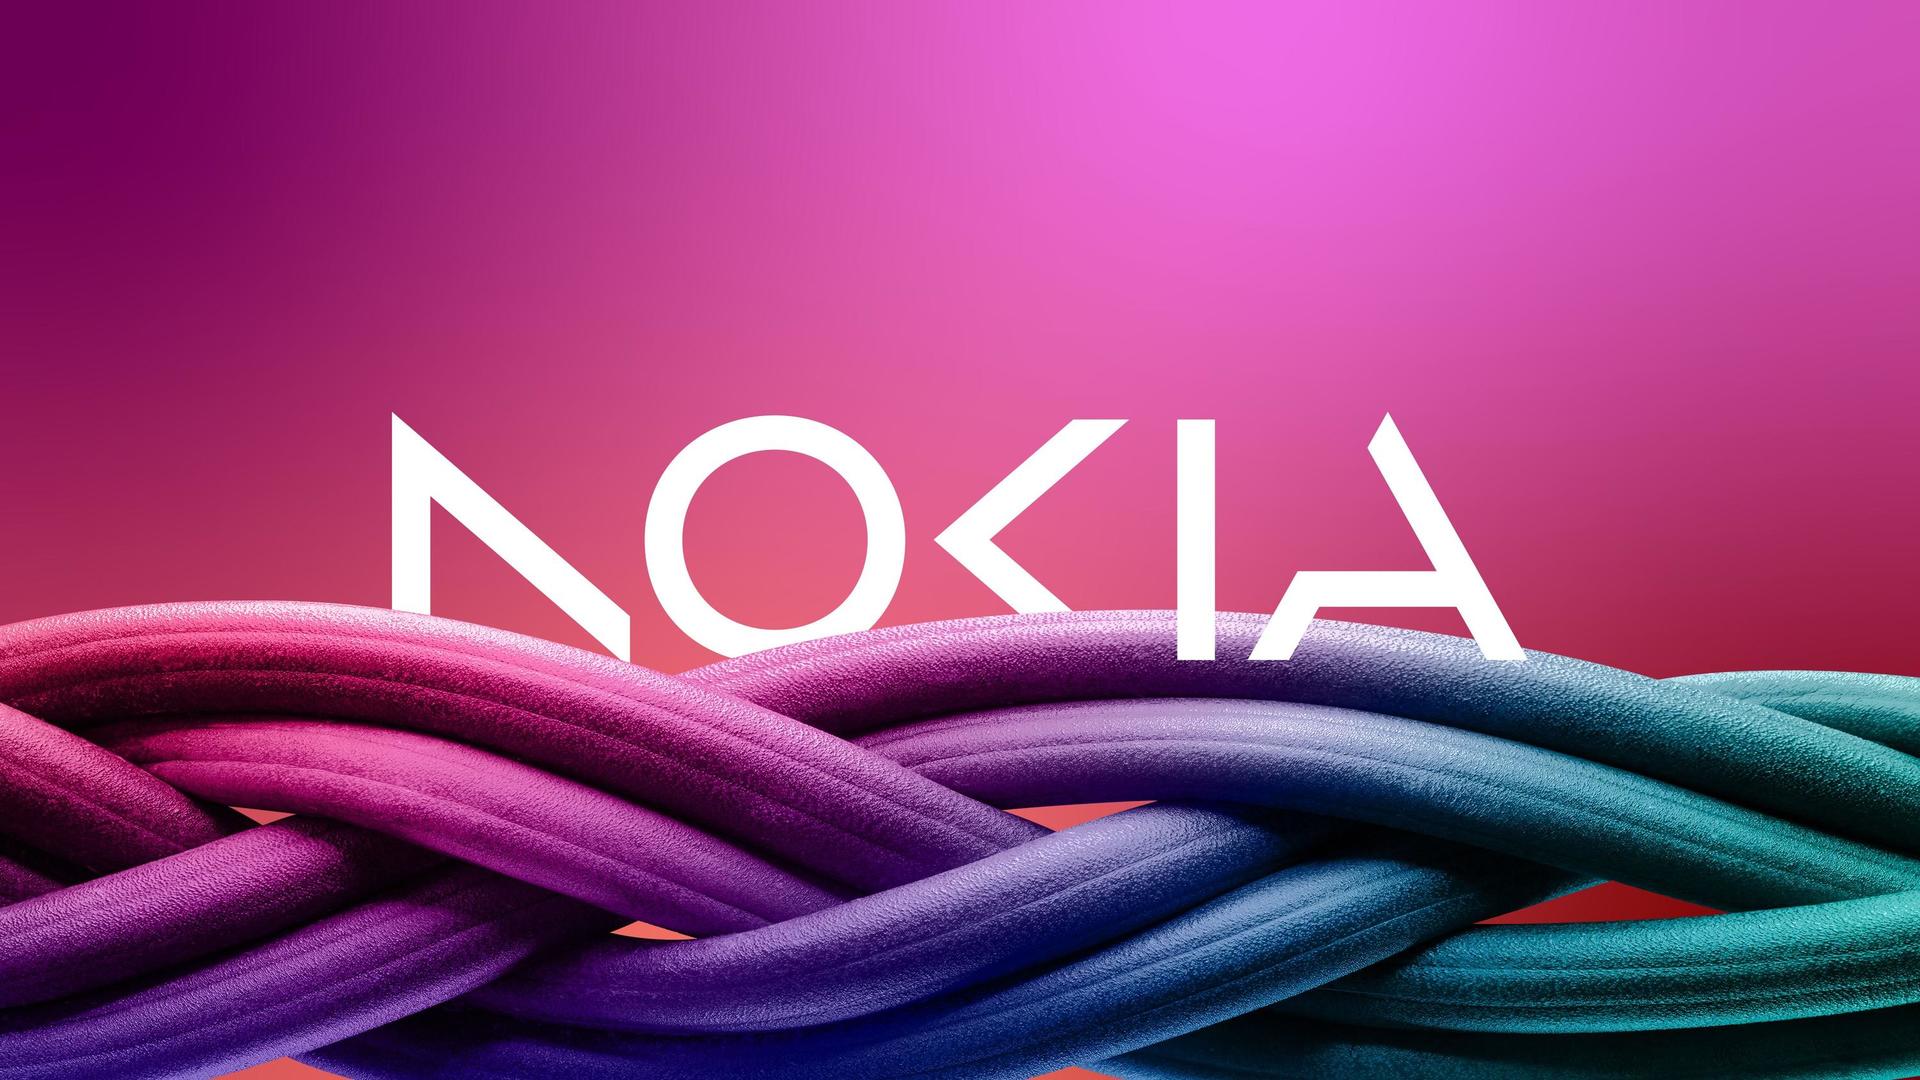 诺基亚时隔近 60 年更换新 logo，是为了和“手机厂商”的身份划清界限